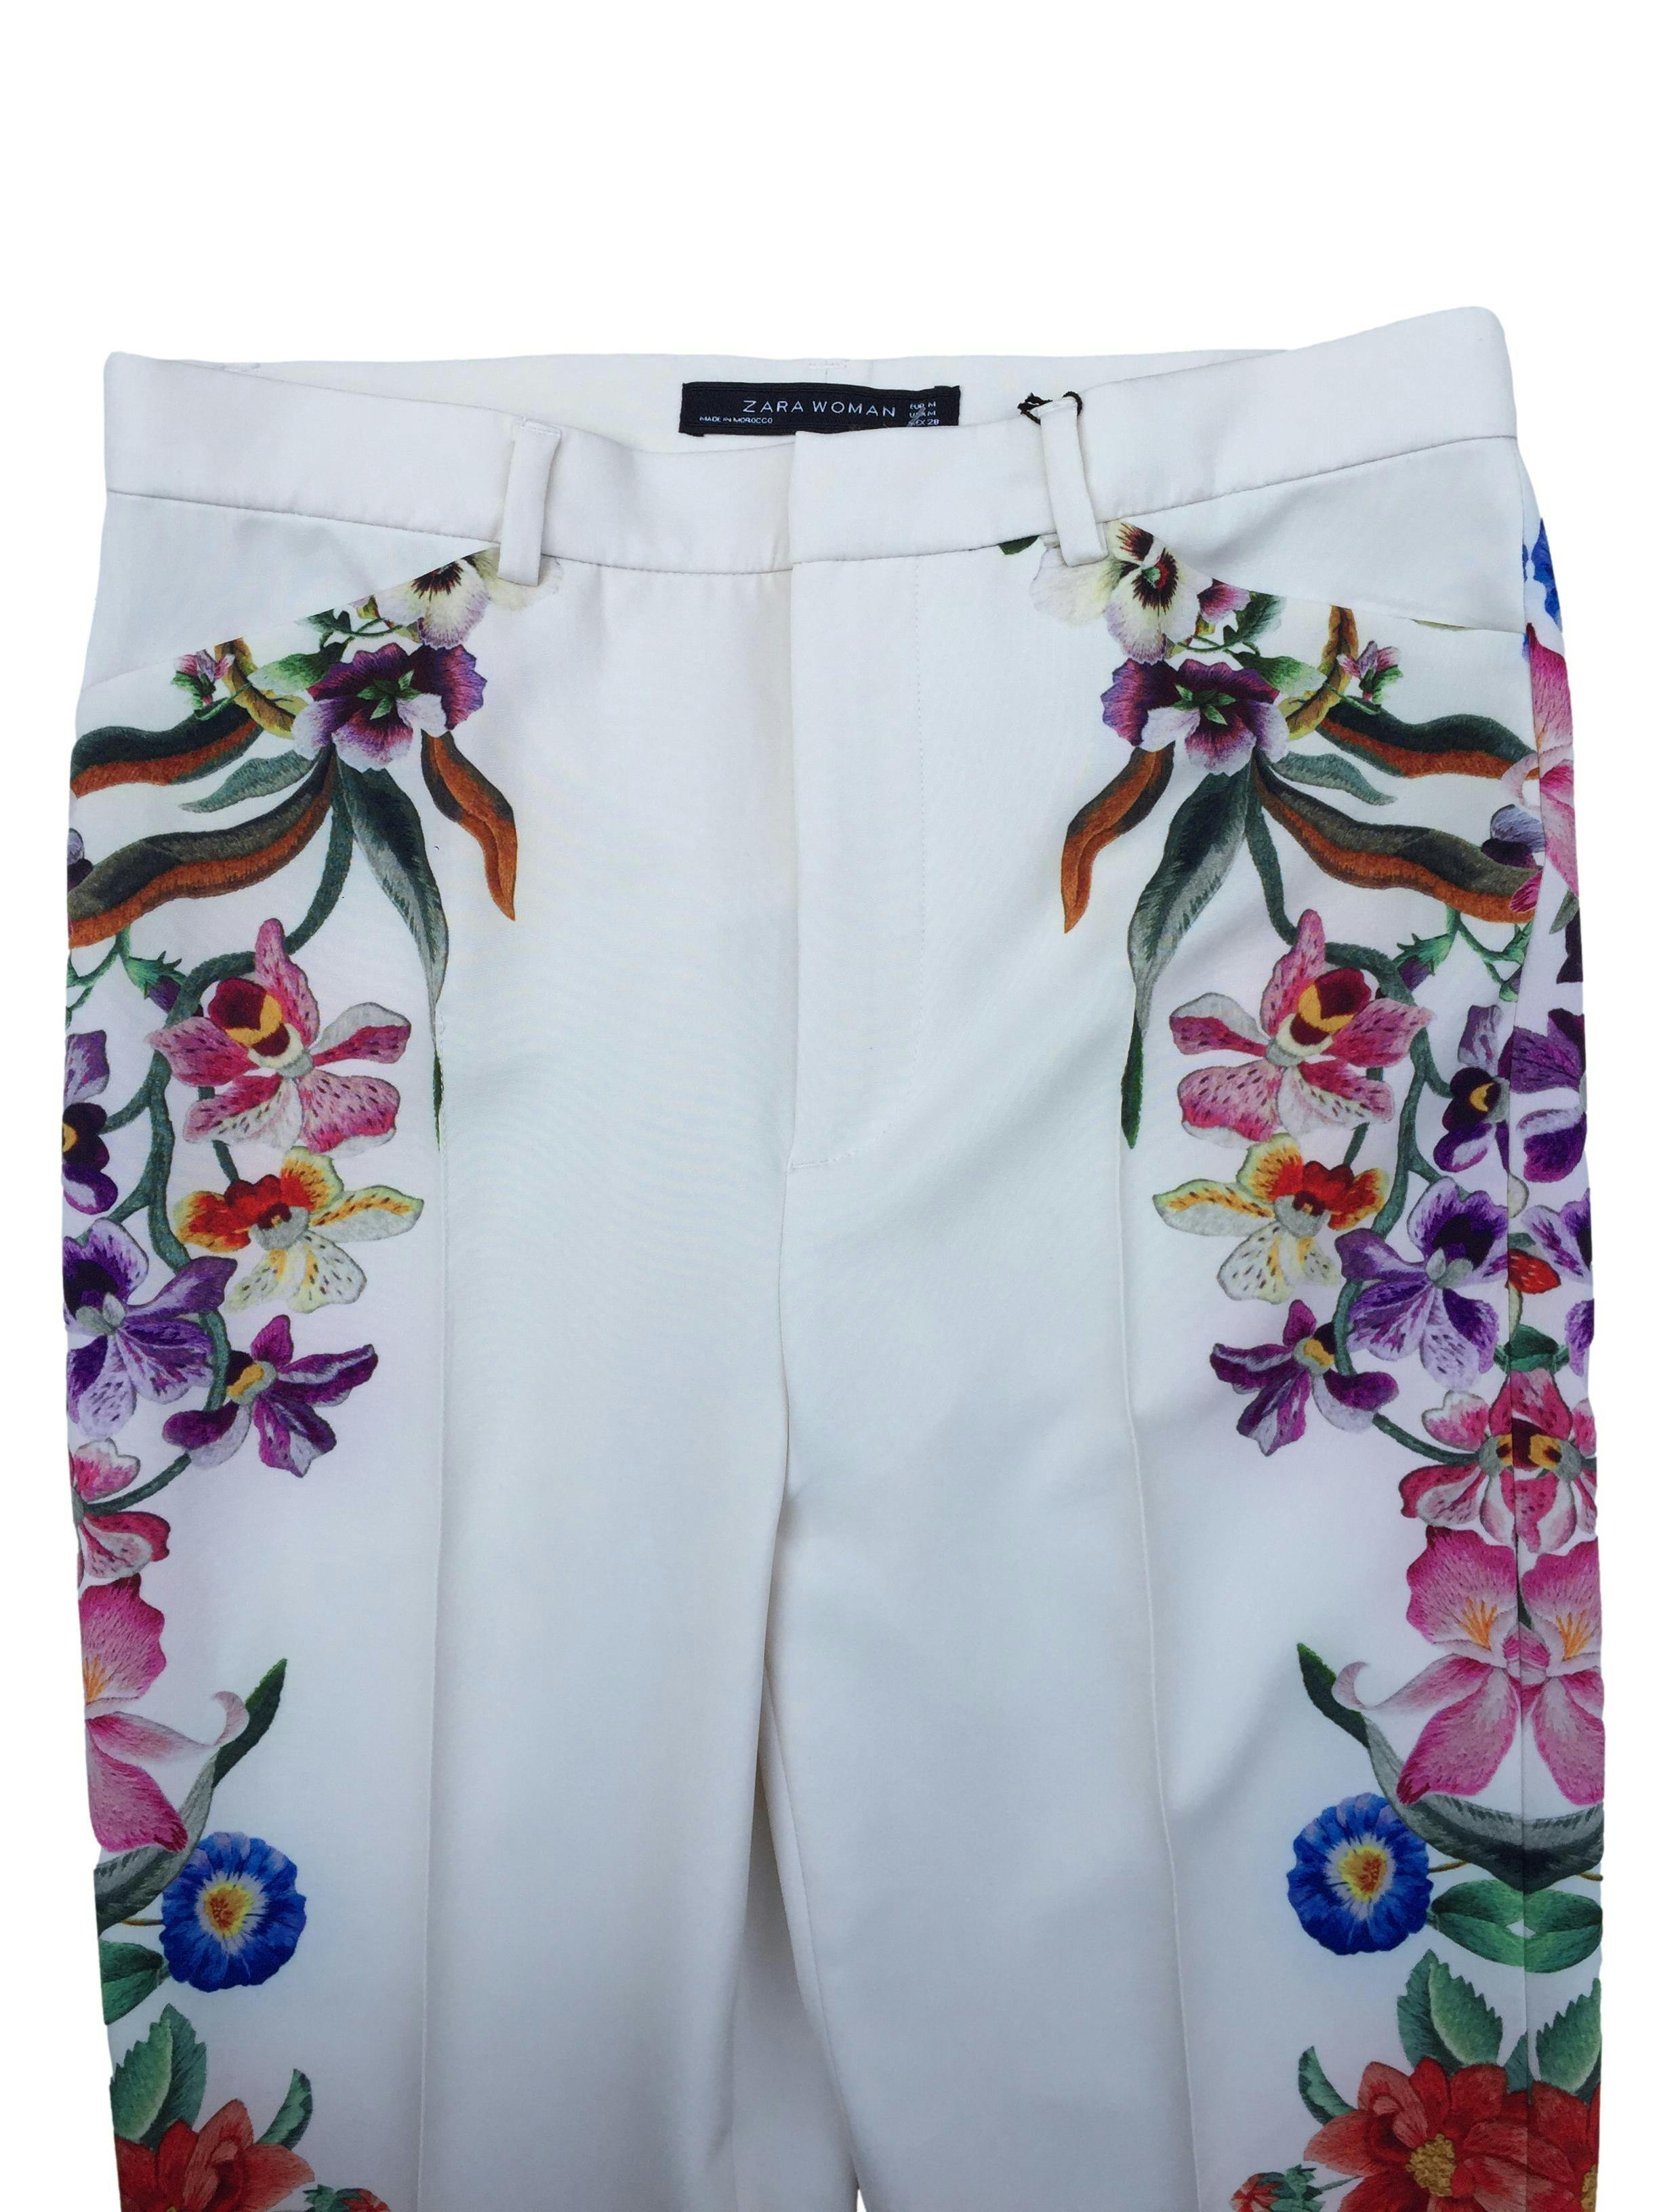 Pantalón Zara perla con estampado flores, corte slim, con cierre y botón delantero. Cintura 72cm Largo 28cm Largo 105cm. Nuevo con etiqueta.